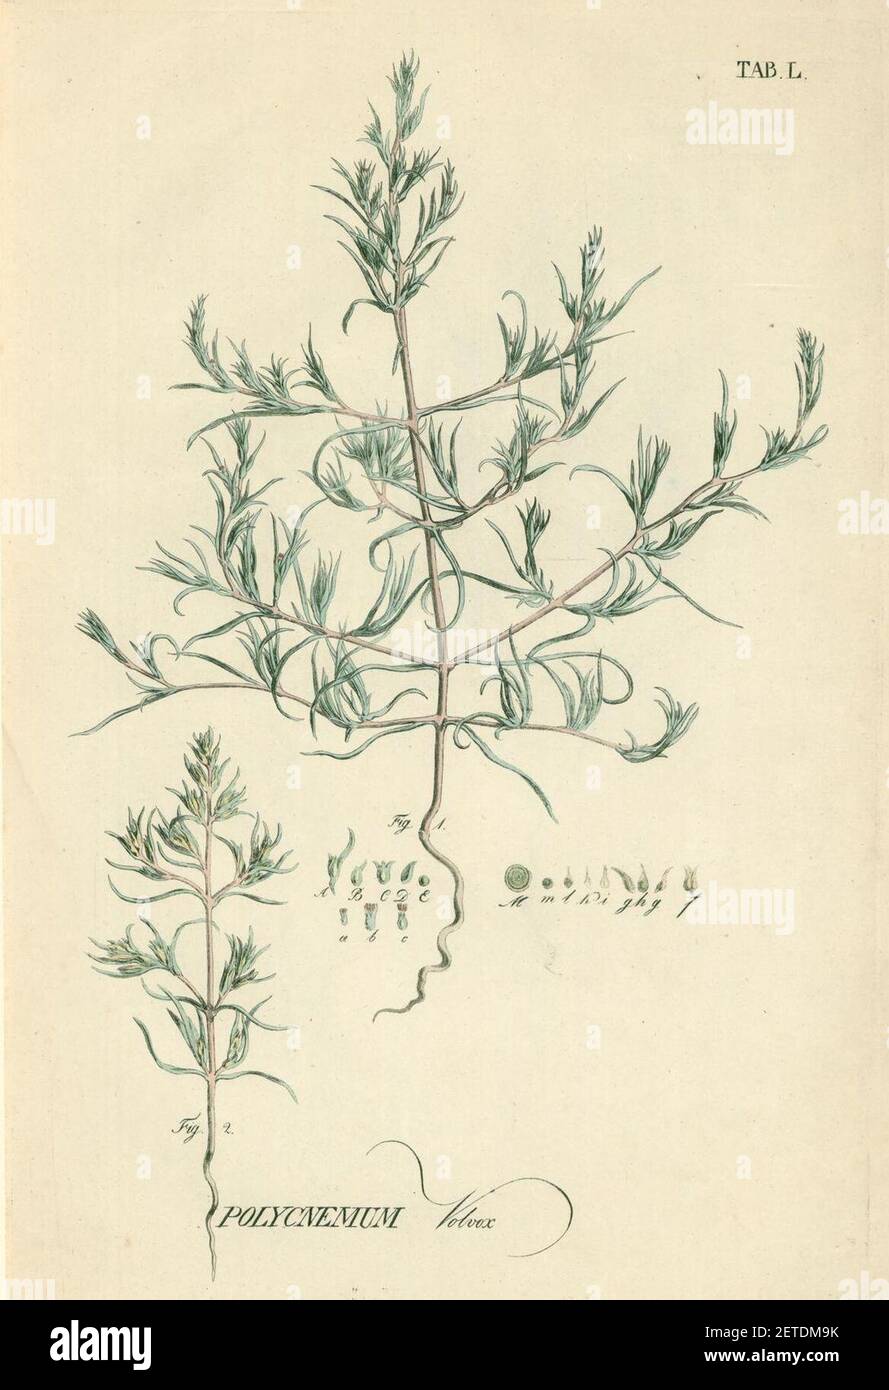 Petrosimonia triandra as Polycnemum volvox. Stock Photo